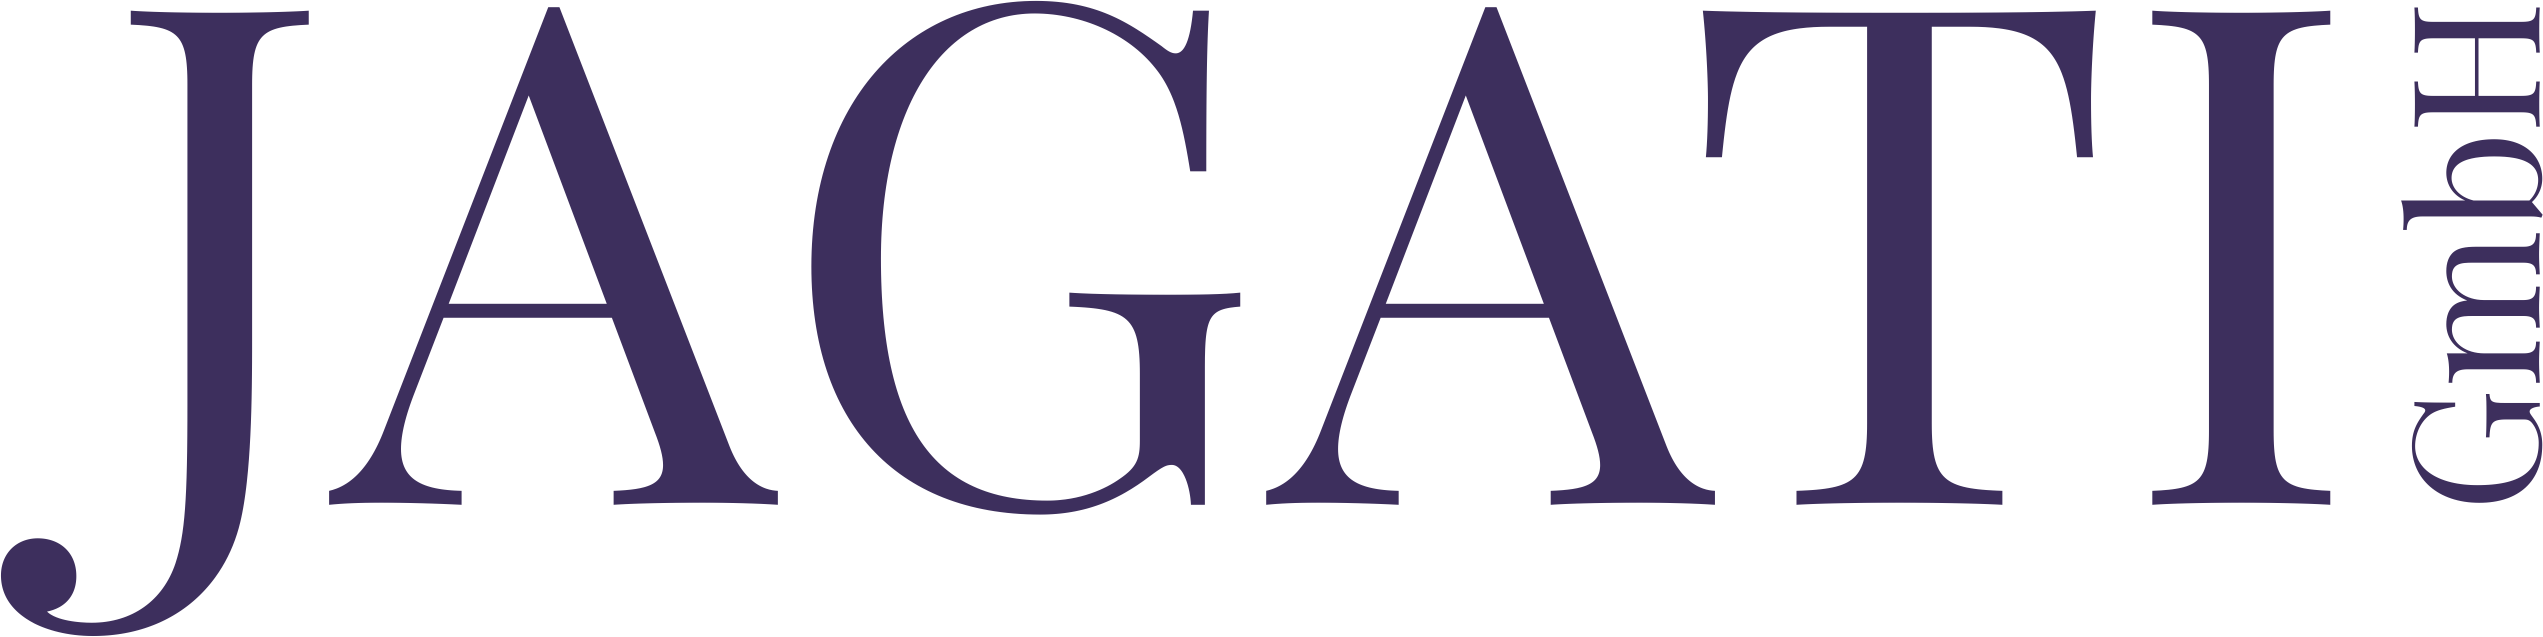 JAGATI Logo